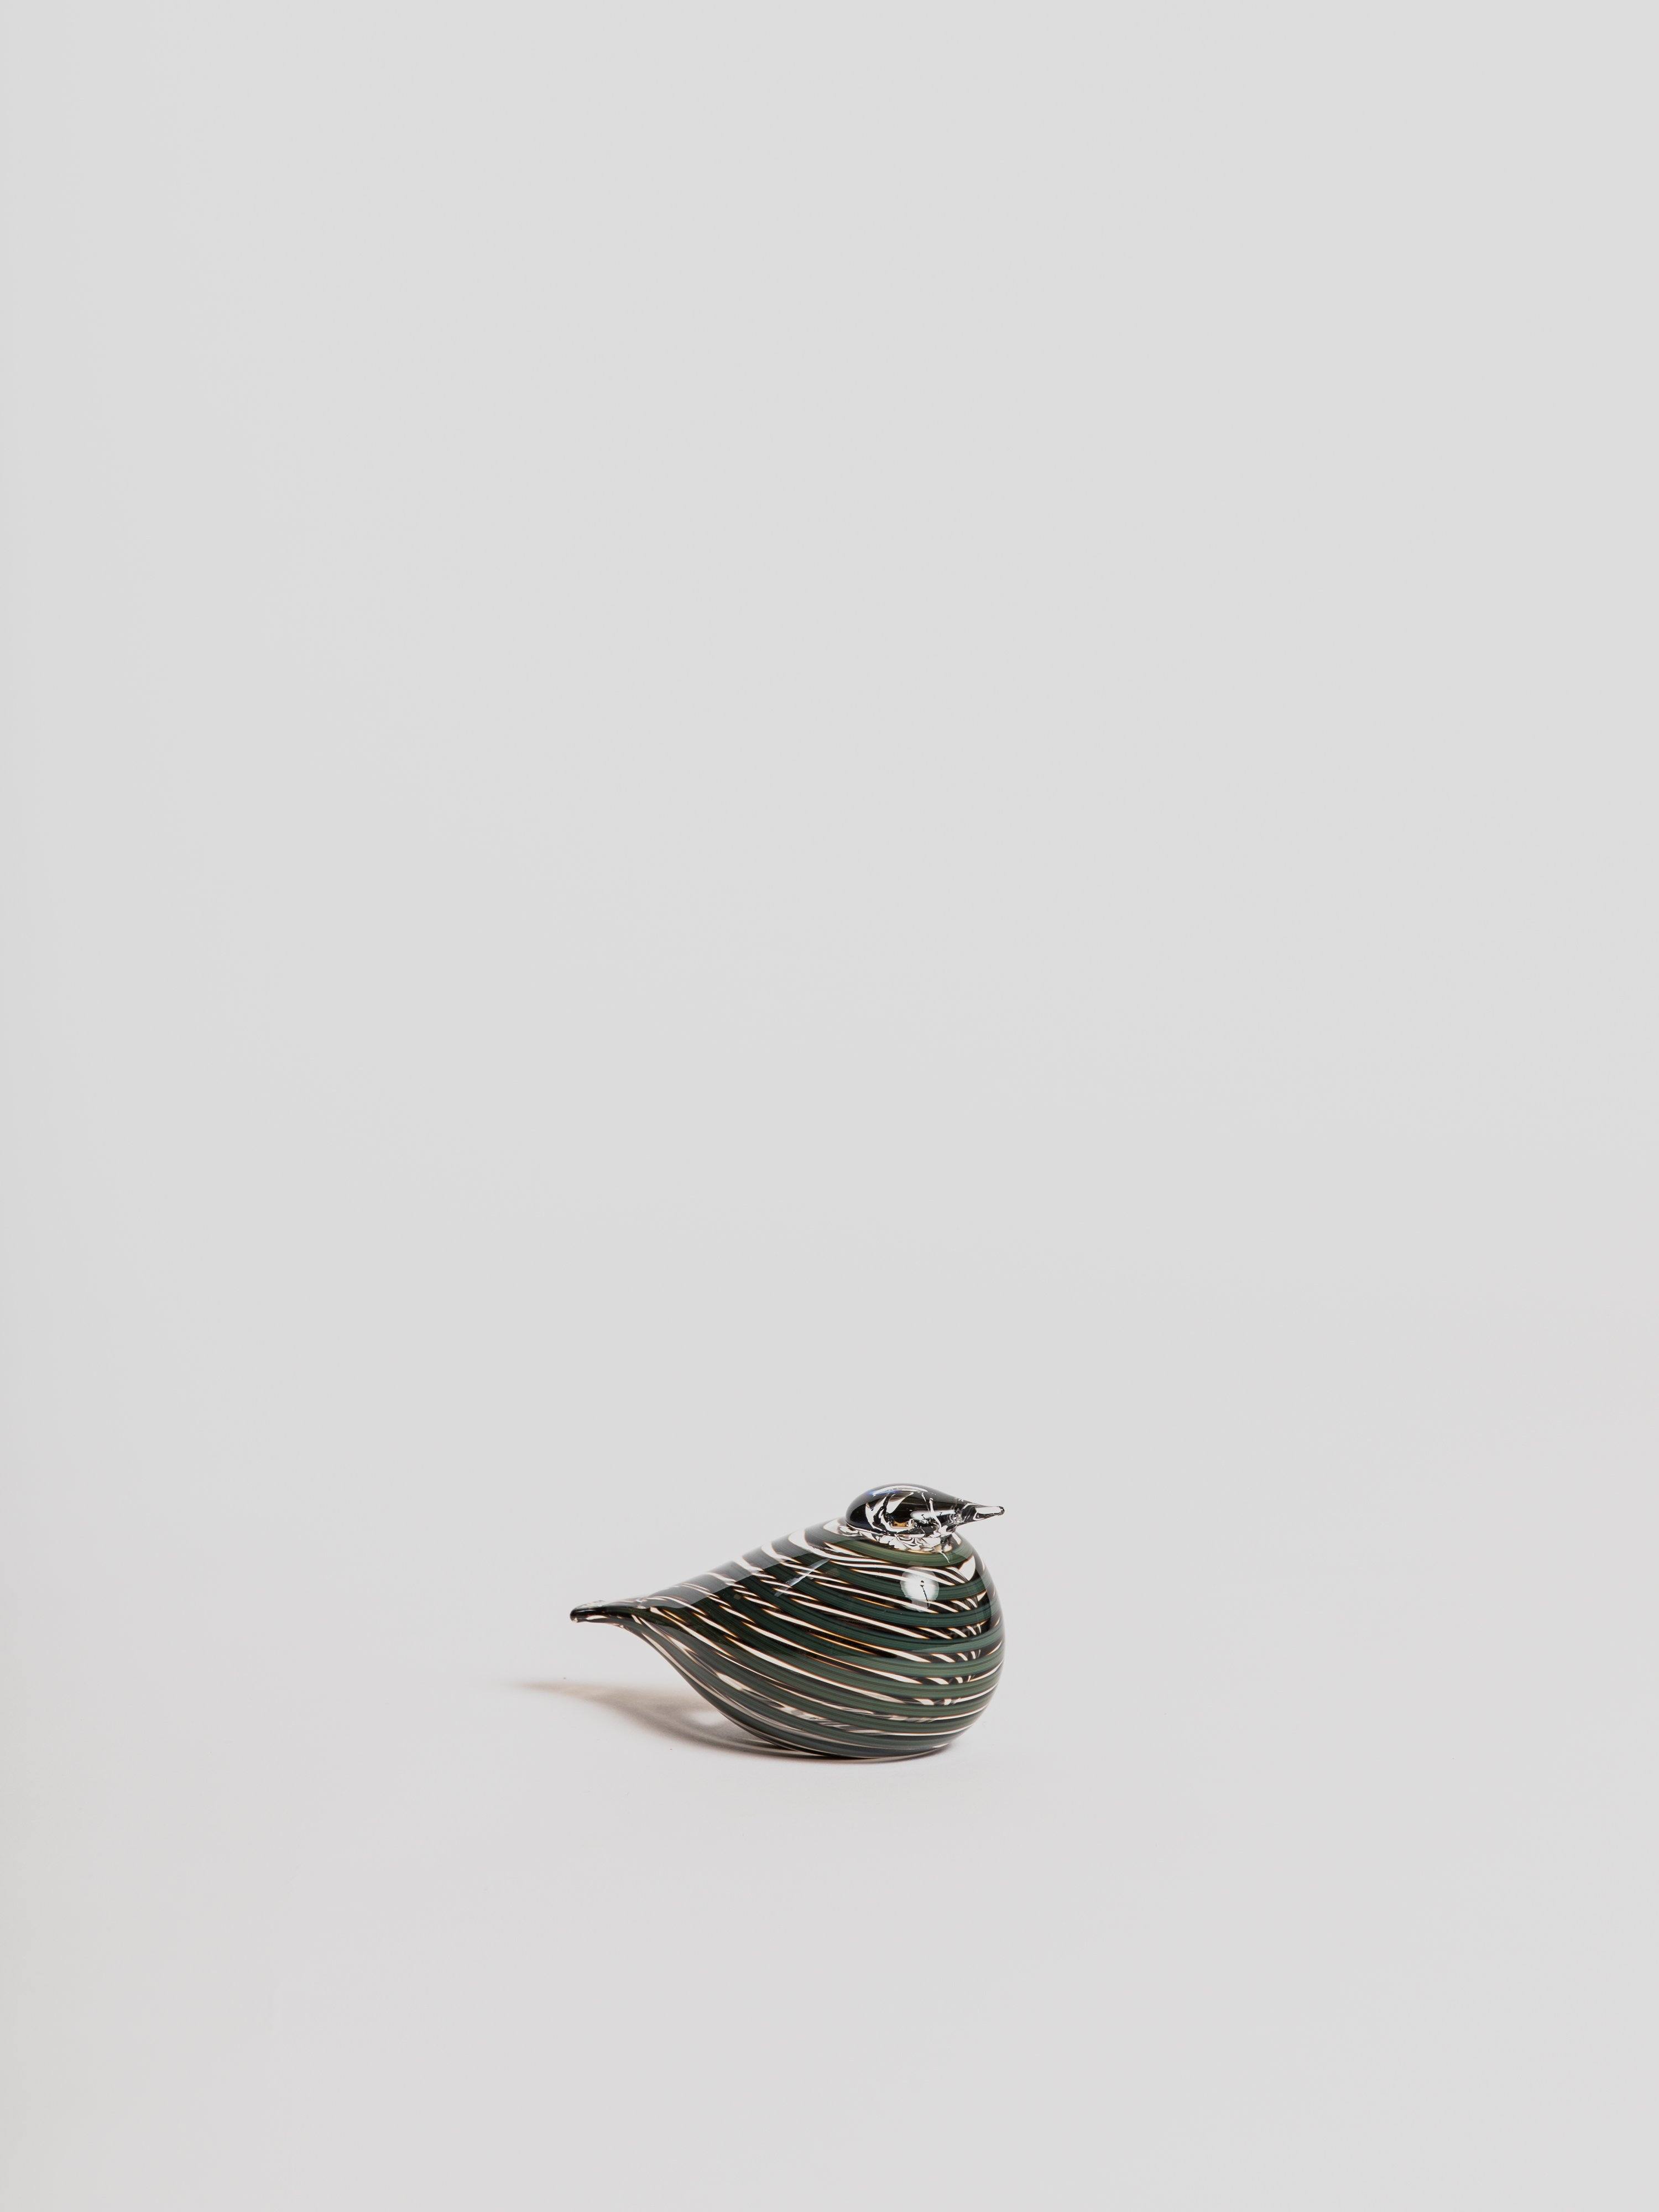 Bird by Toikka - Whip-Poor-Will Garden Tool Iittala 